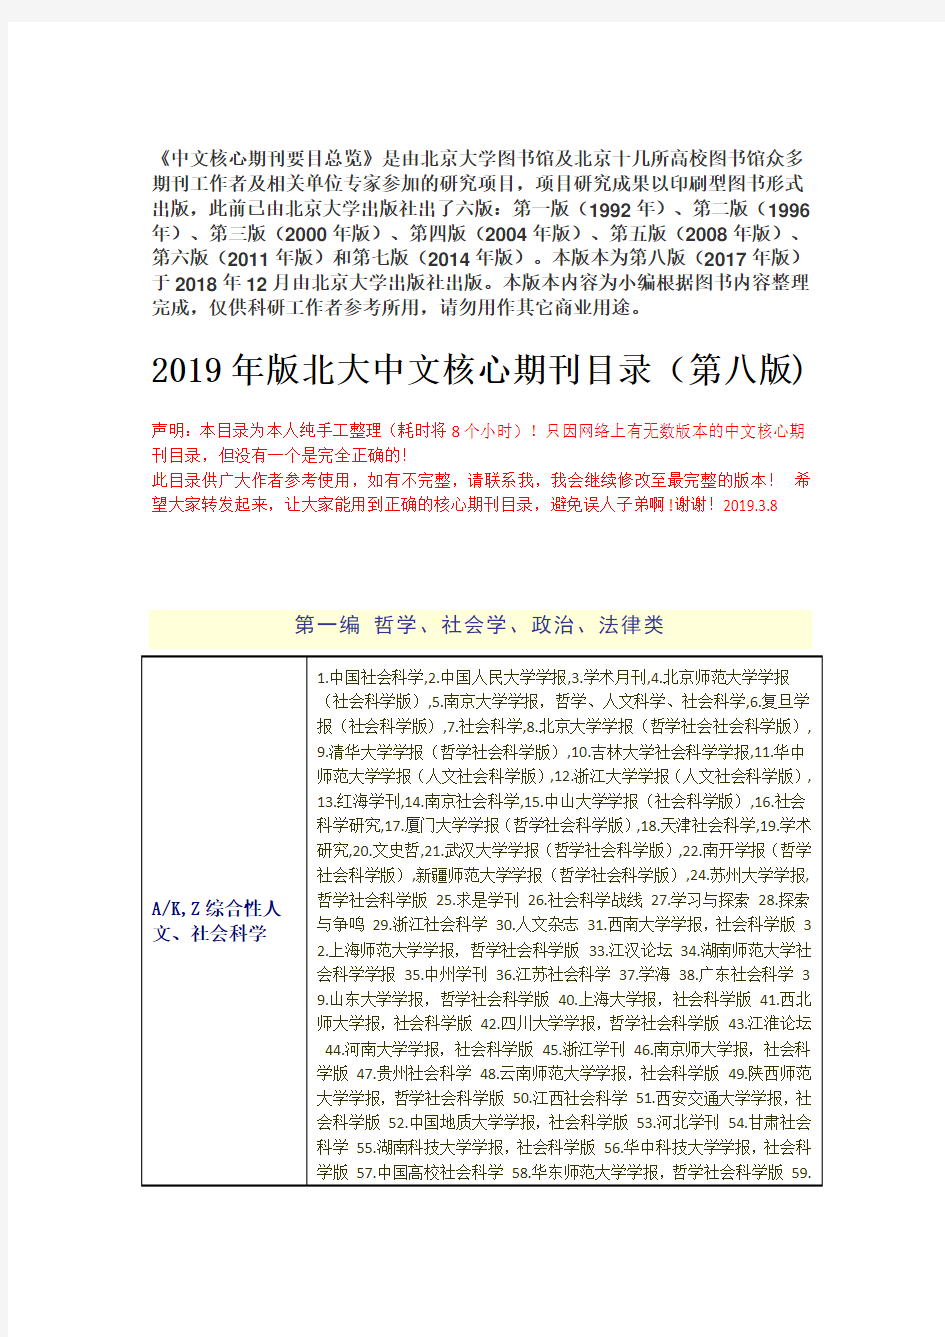 2019年中文核心期刊目录总览第八版纯净版